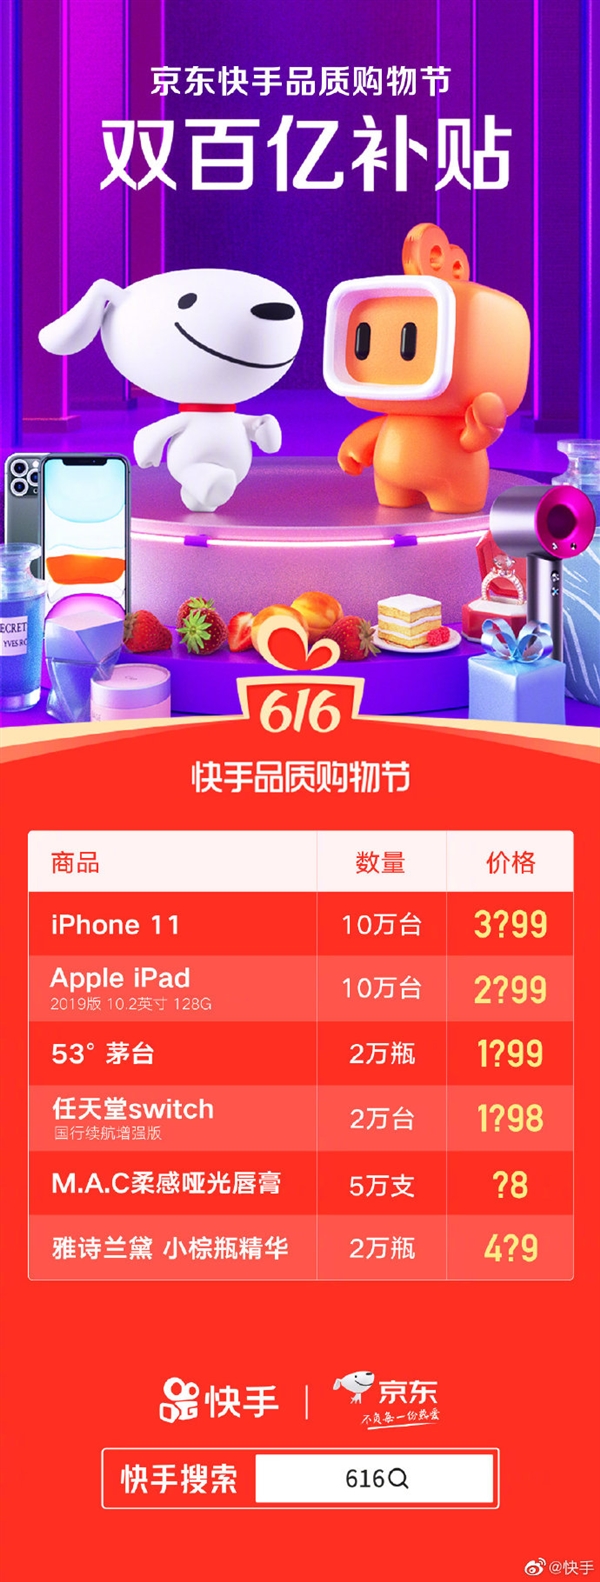 5G新时代：苹果iPhone 12系列引领全球关注  第2张